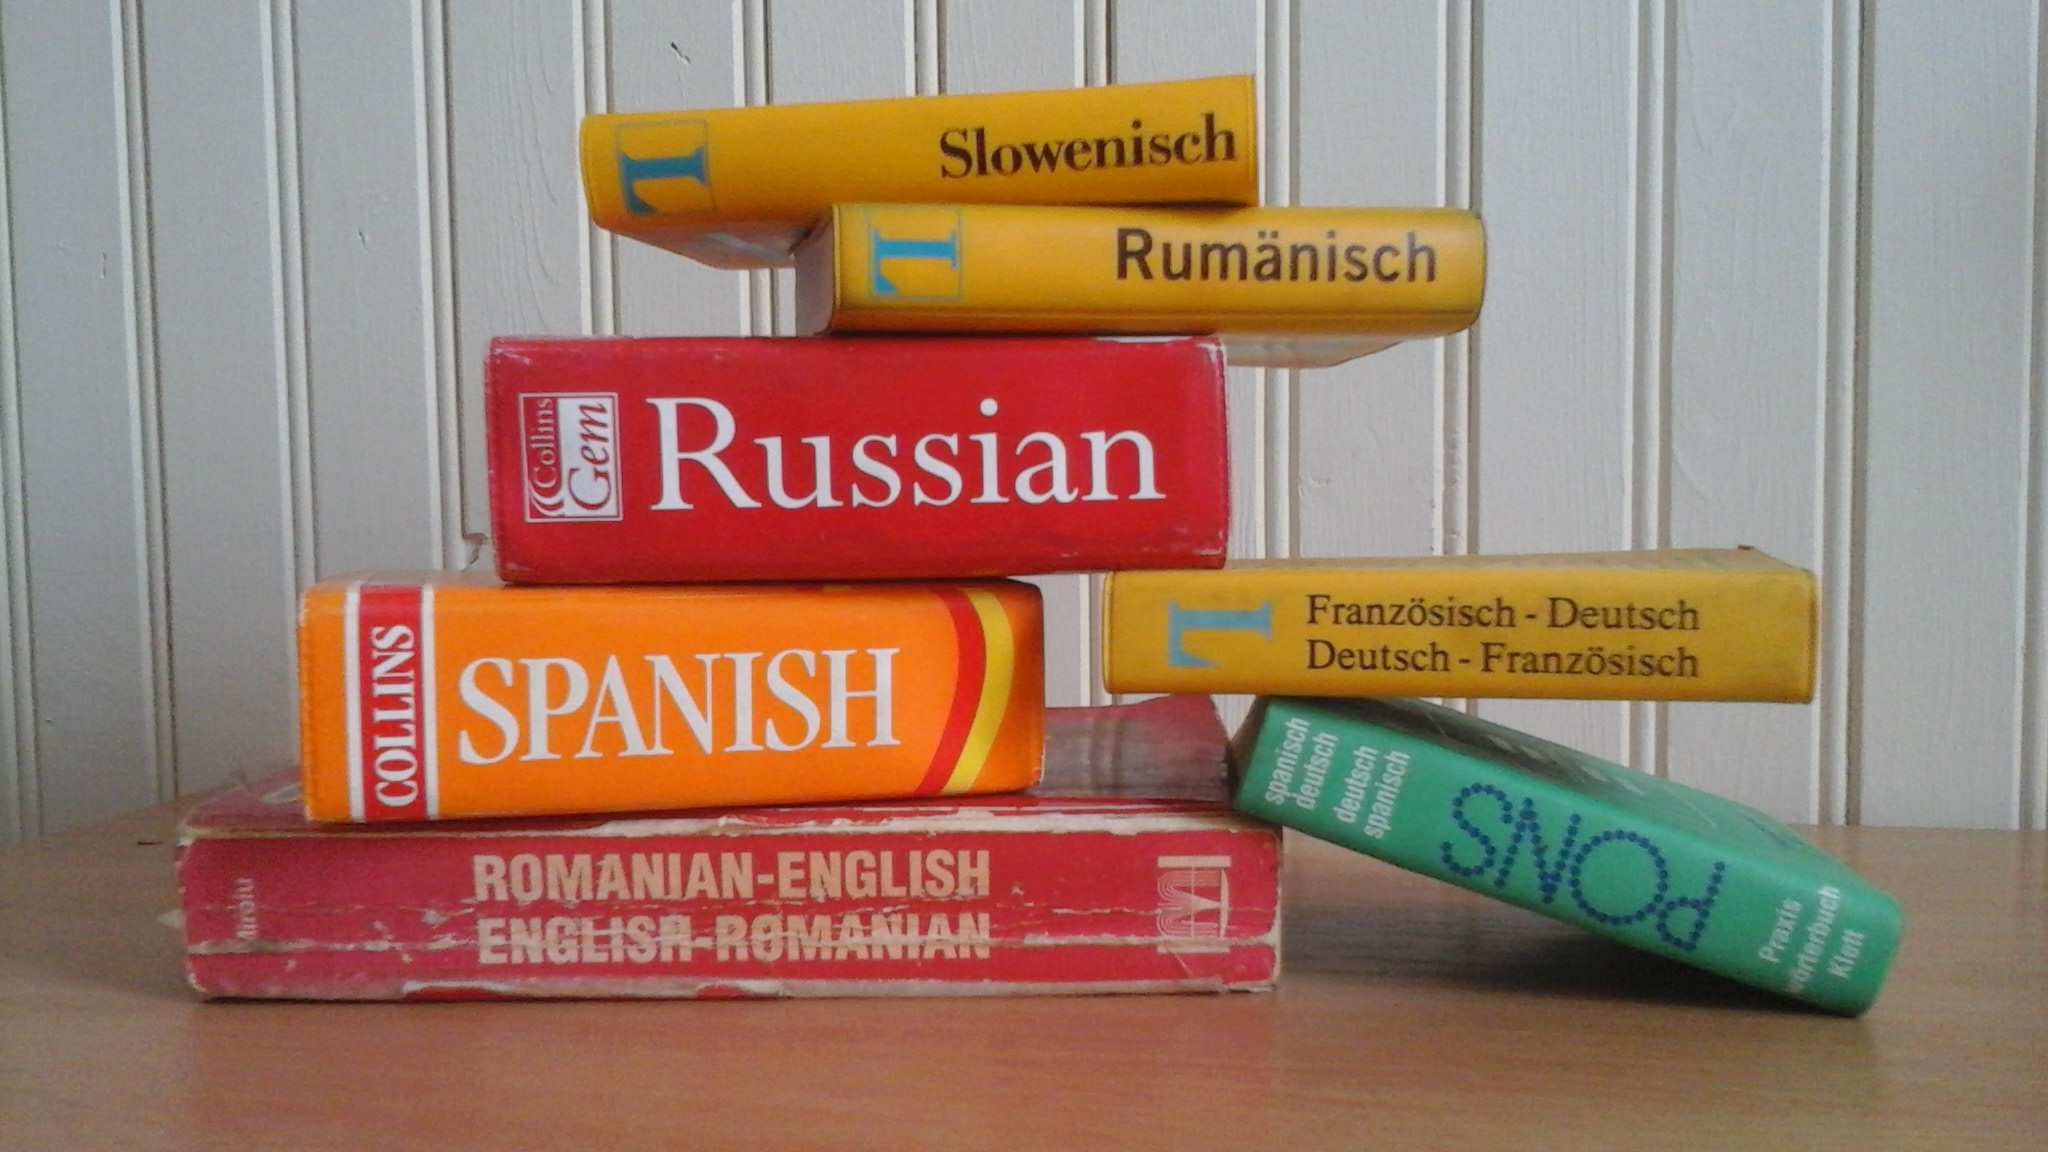 Mehrere Wörterbücher verschiedener Sprachen: Slowenisch, Rumänisch, Russisch, Spanisch, Französisch